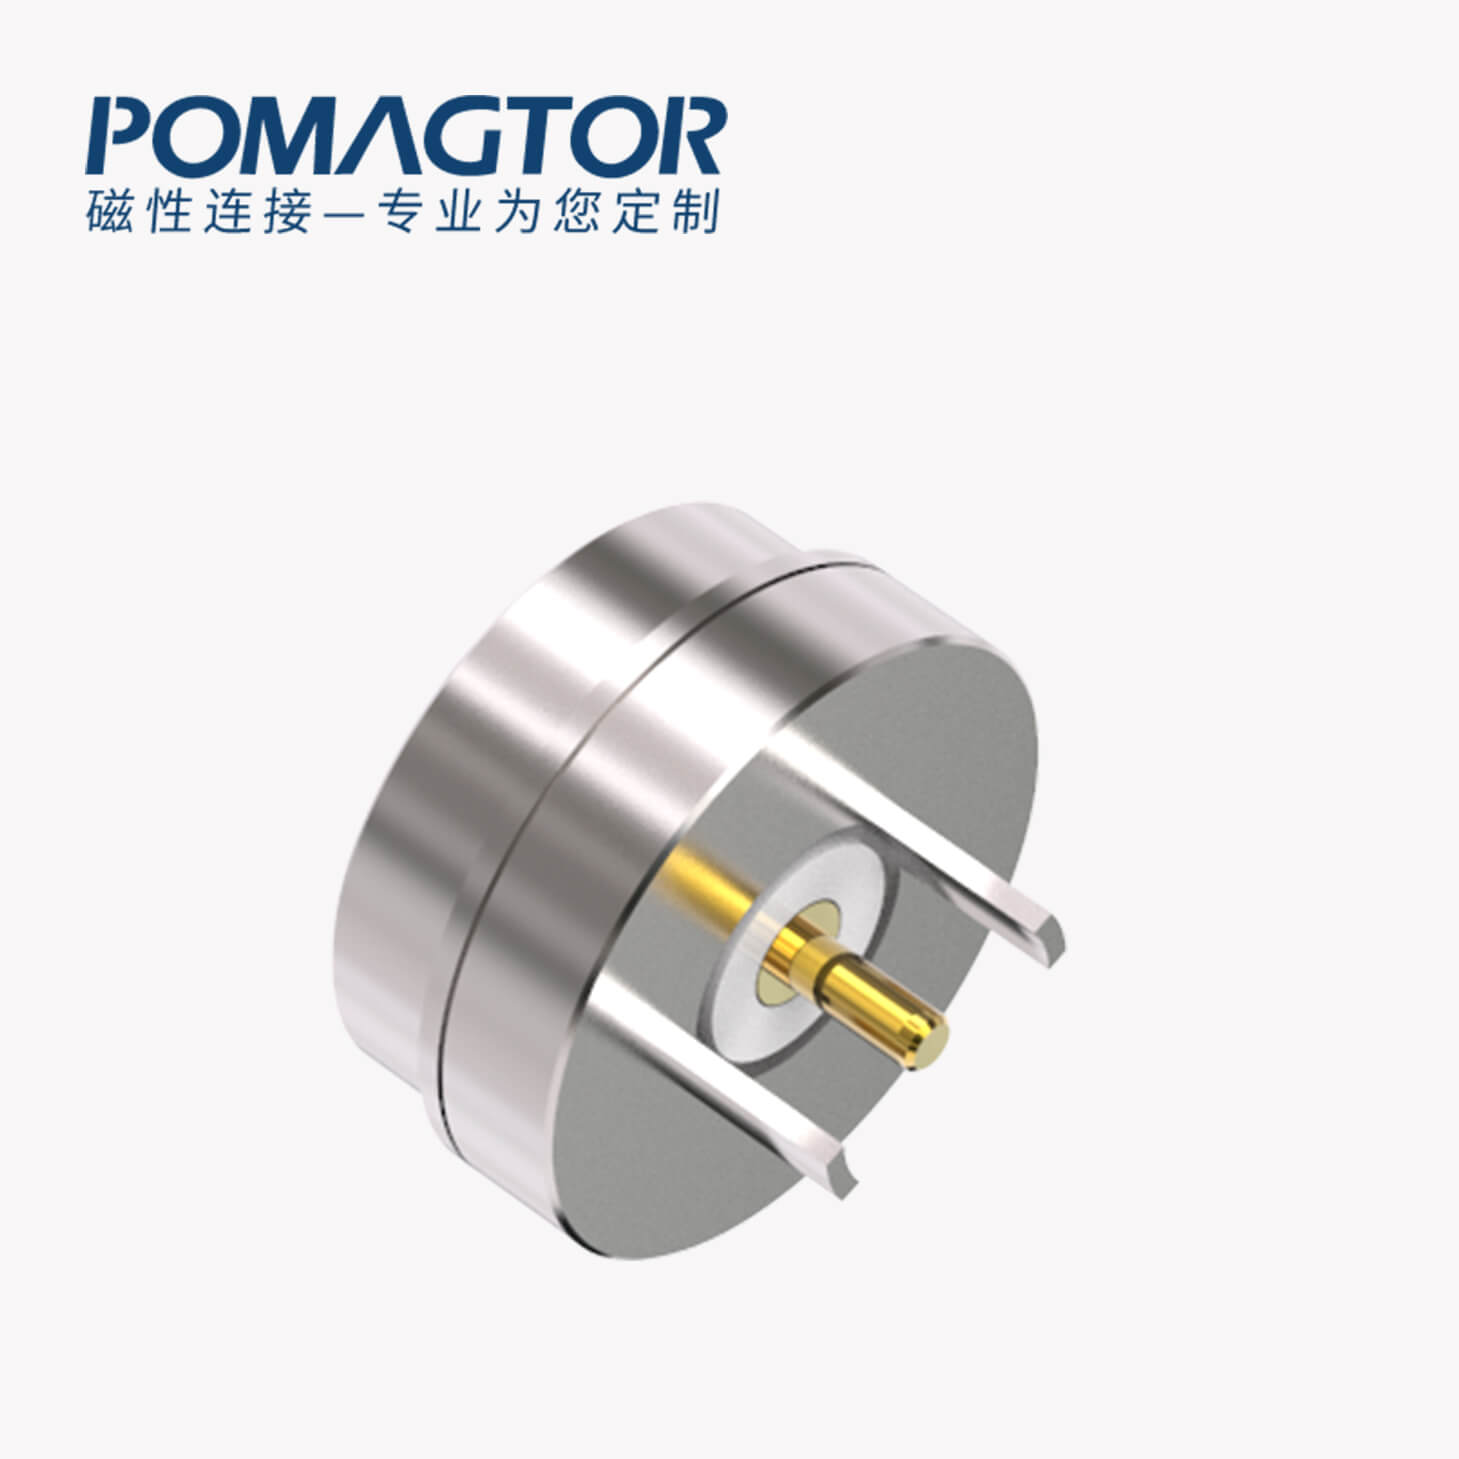 磁吸连接器 圆形磁性系列：2PIN，黄铜Au5u，电压5V，电流3A，工作行程0.8mm:60gfMax，弹力10000次+，工作温度-30°~85°